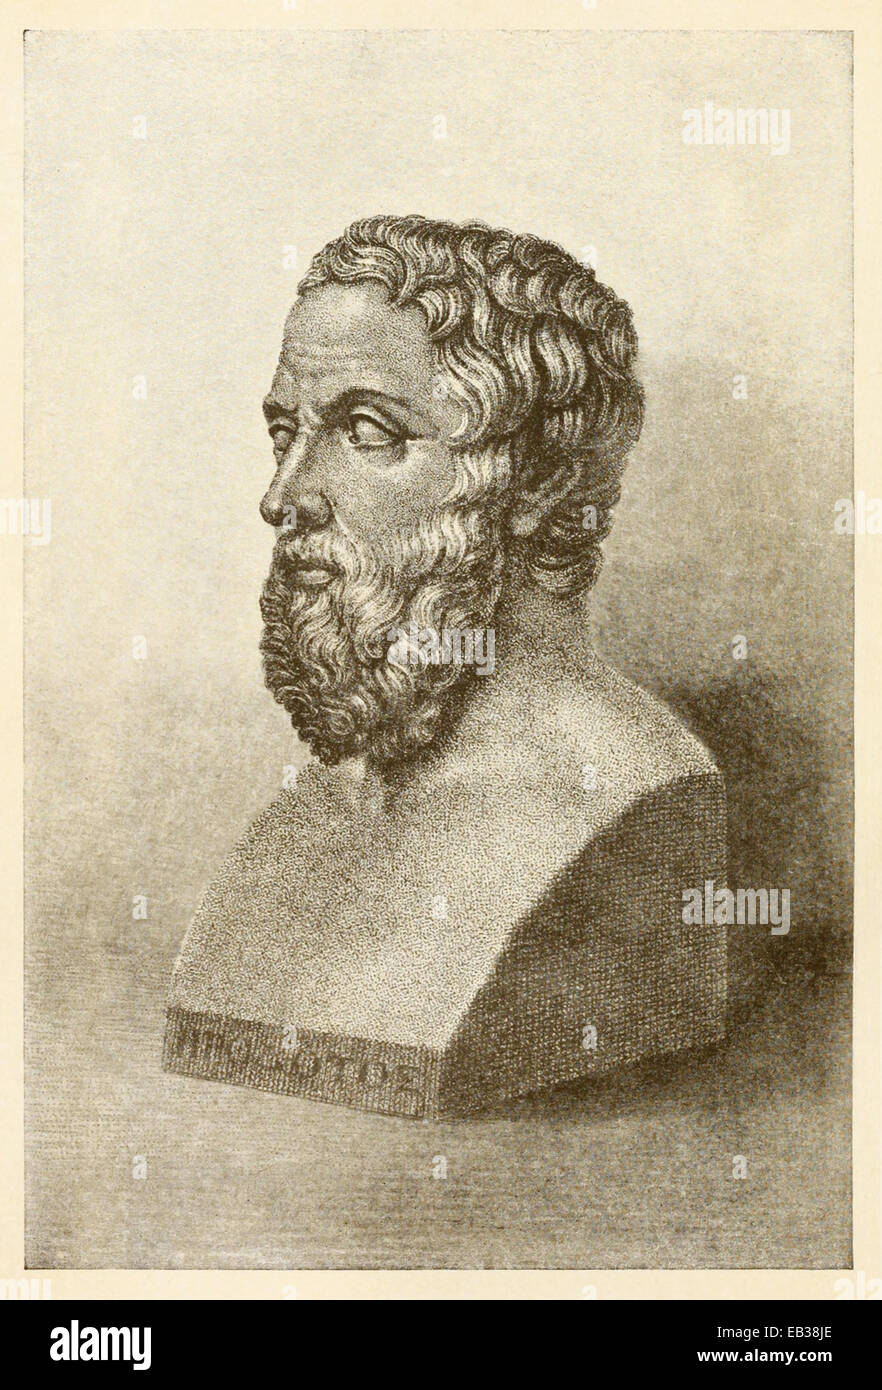 Disegno del busto di Erodoto (484-425BC), lo storico greco. Vedere la descrizione per maggiori informazioni. Foto Stock